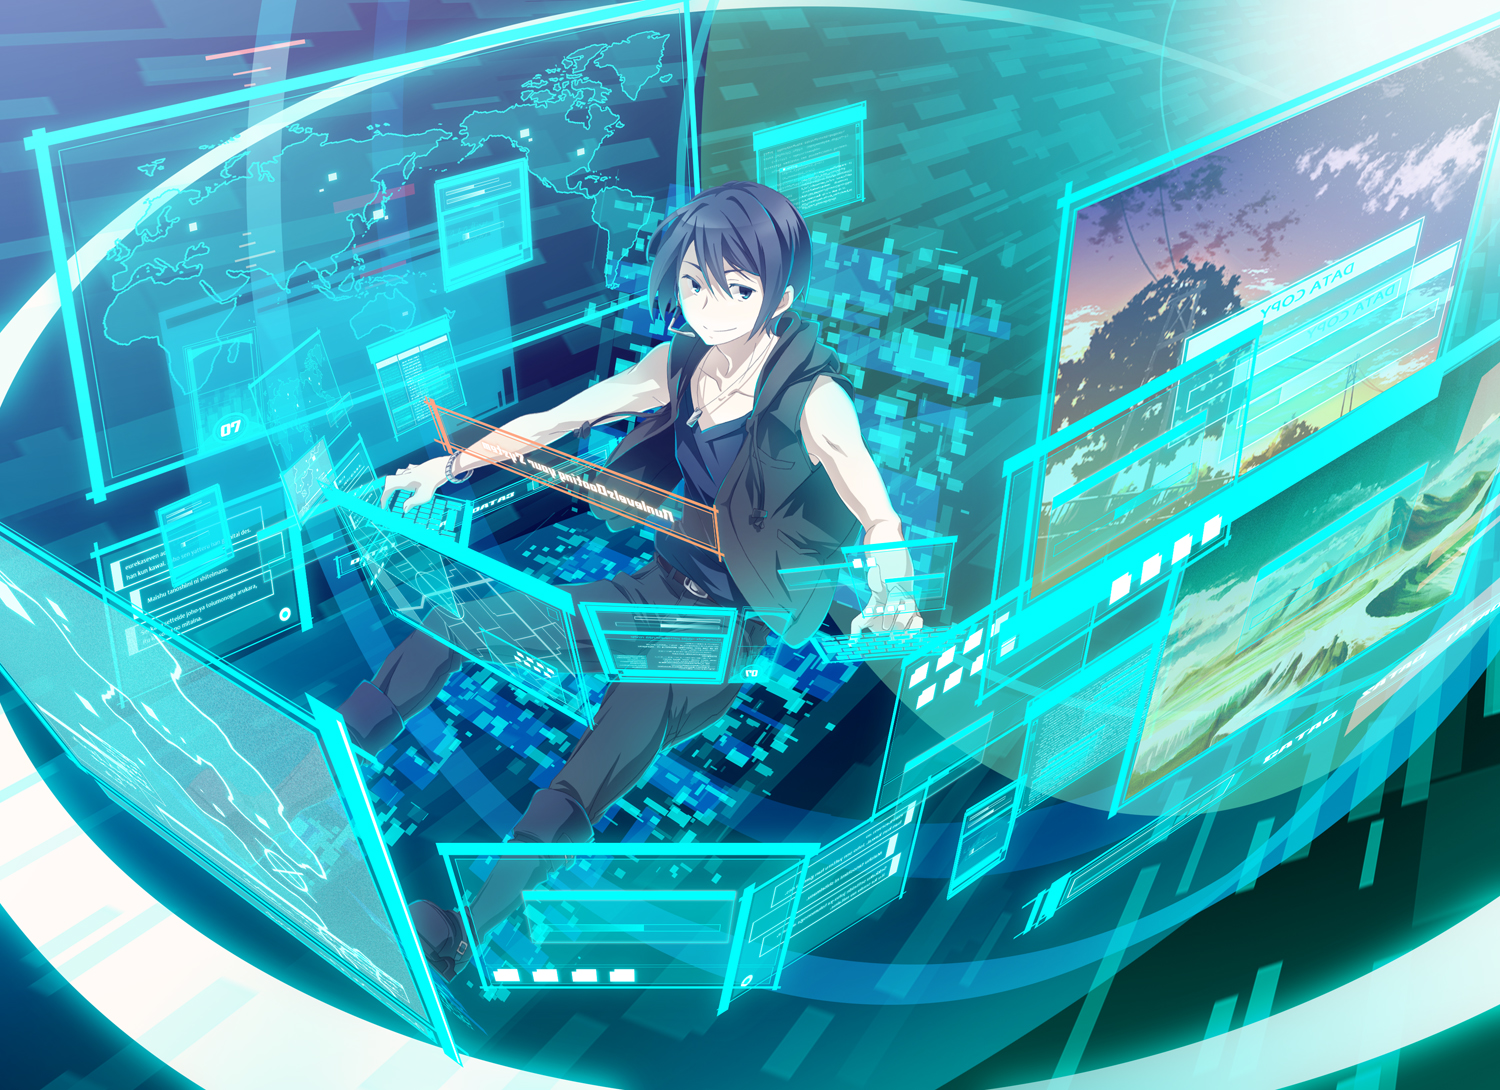 Anime Eureka Seven Ao HD Wallpaper | Background Image